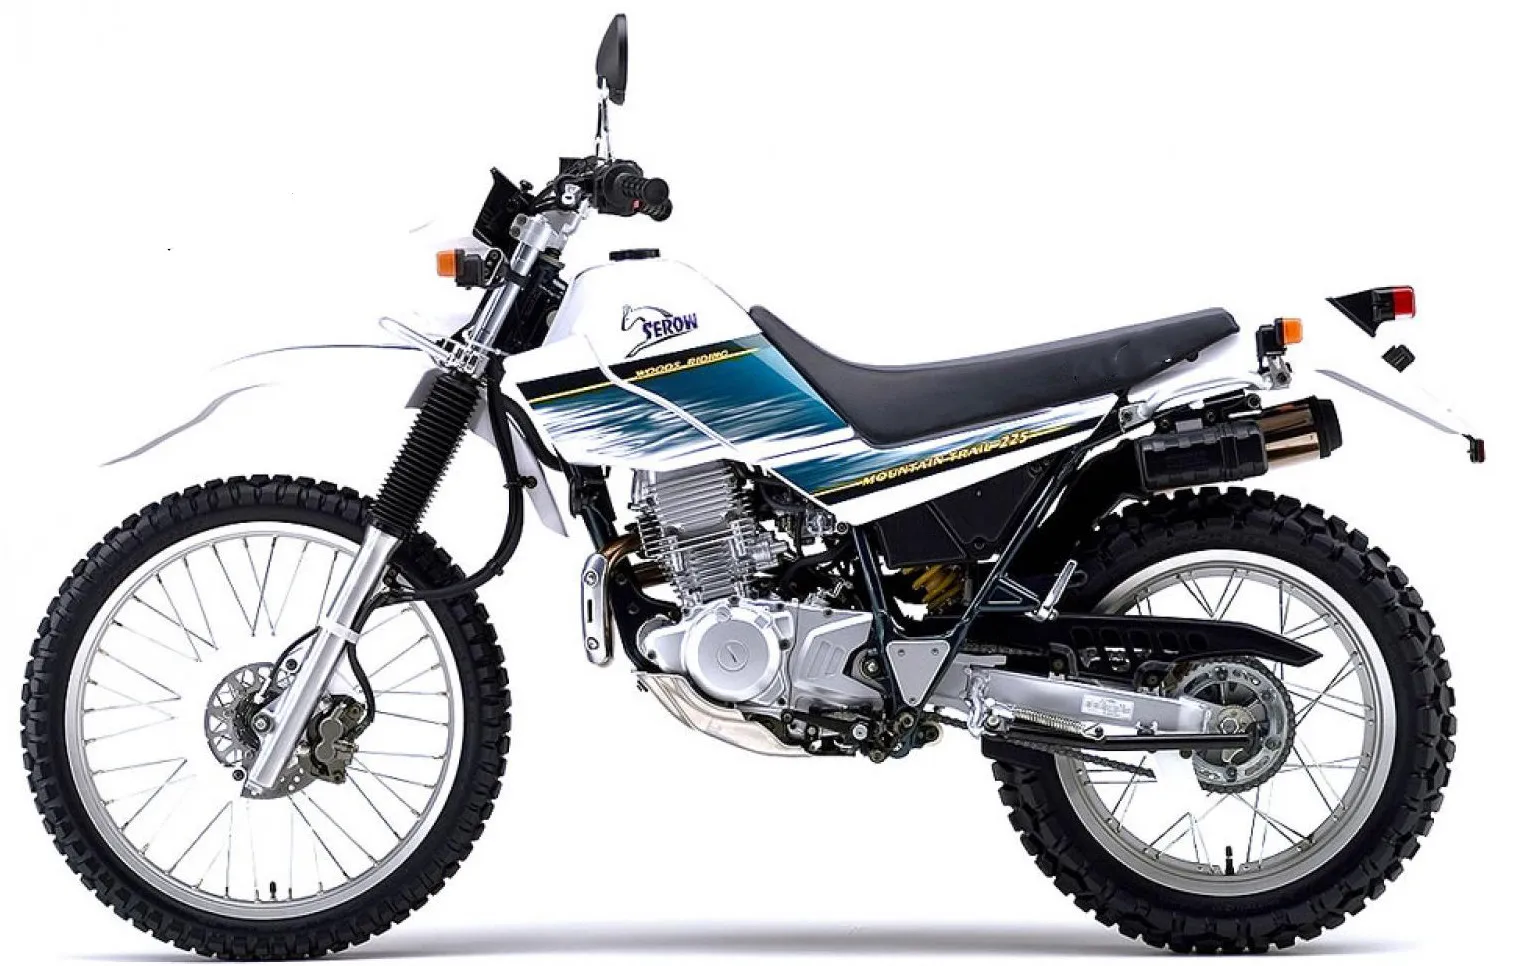 Мотоцикл SEROW-225 графика наклейки наклейки 3 м фоны Наборы для Yamaha SEROW 225 1997 1998 1999 2000 2001 2002 2003 2004 Изображение 1